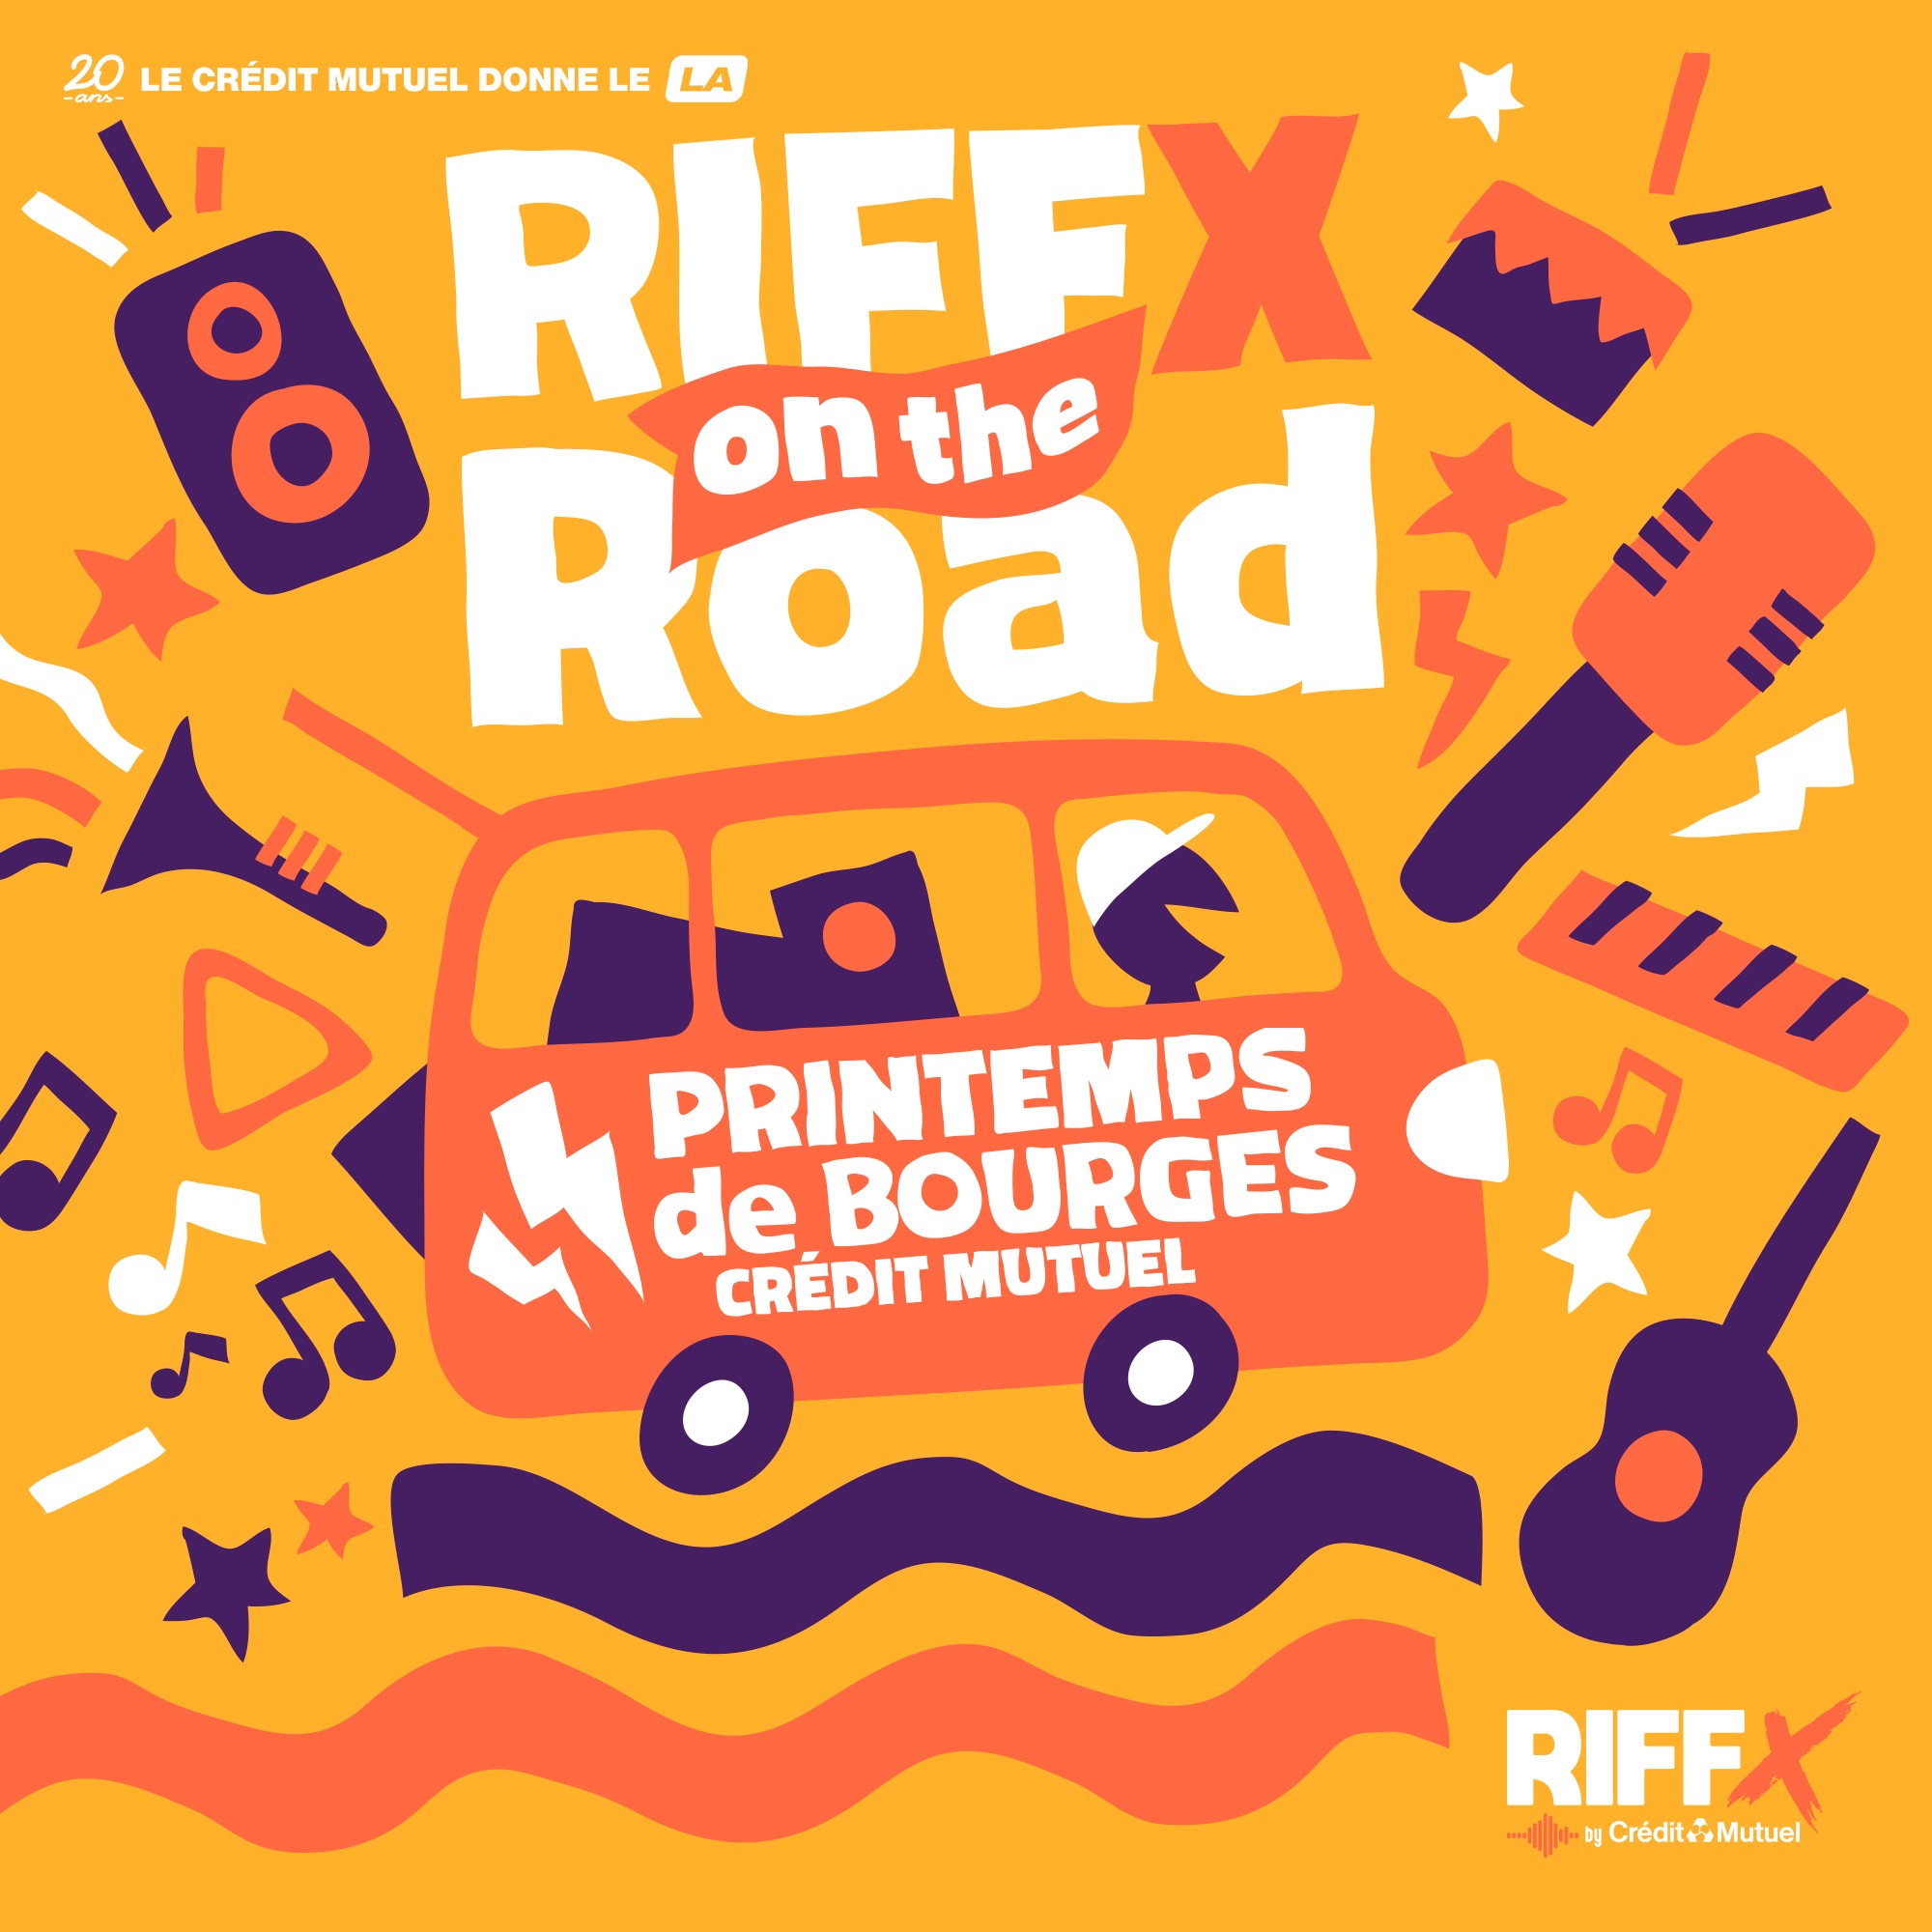 RIFFX on the Road : Épisode 5 au Printemps de Bourges Crédit Mutuel